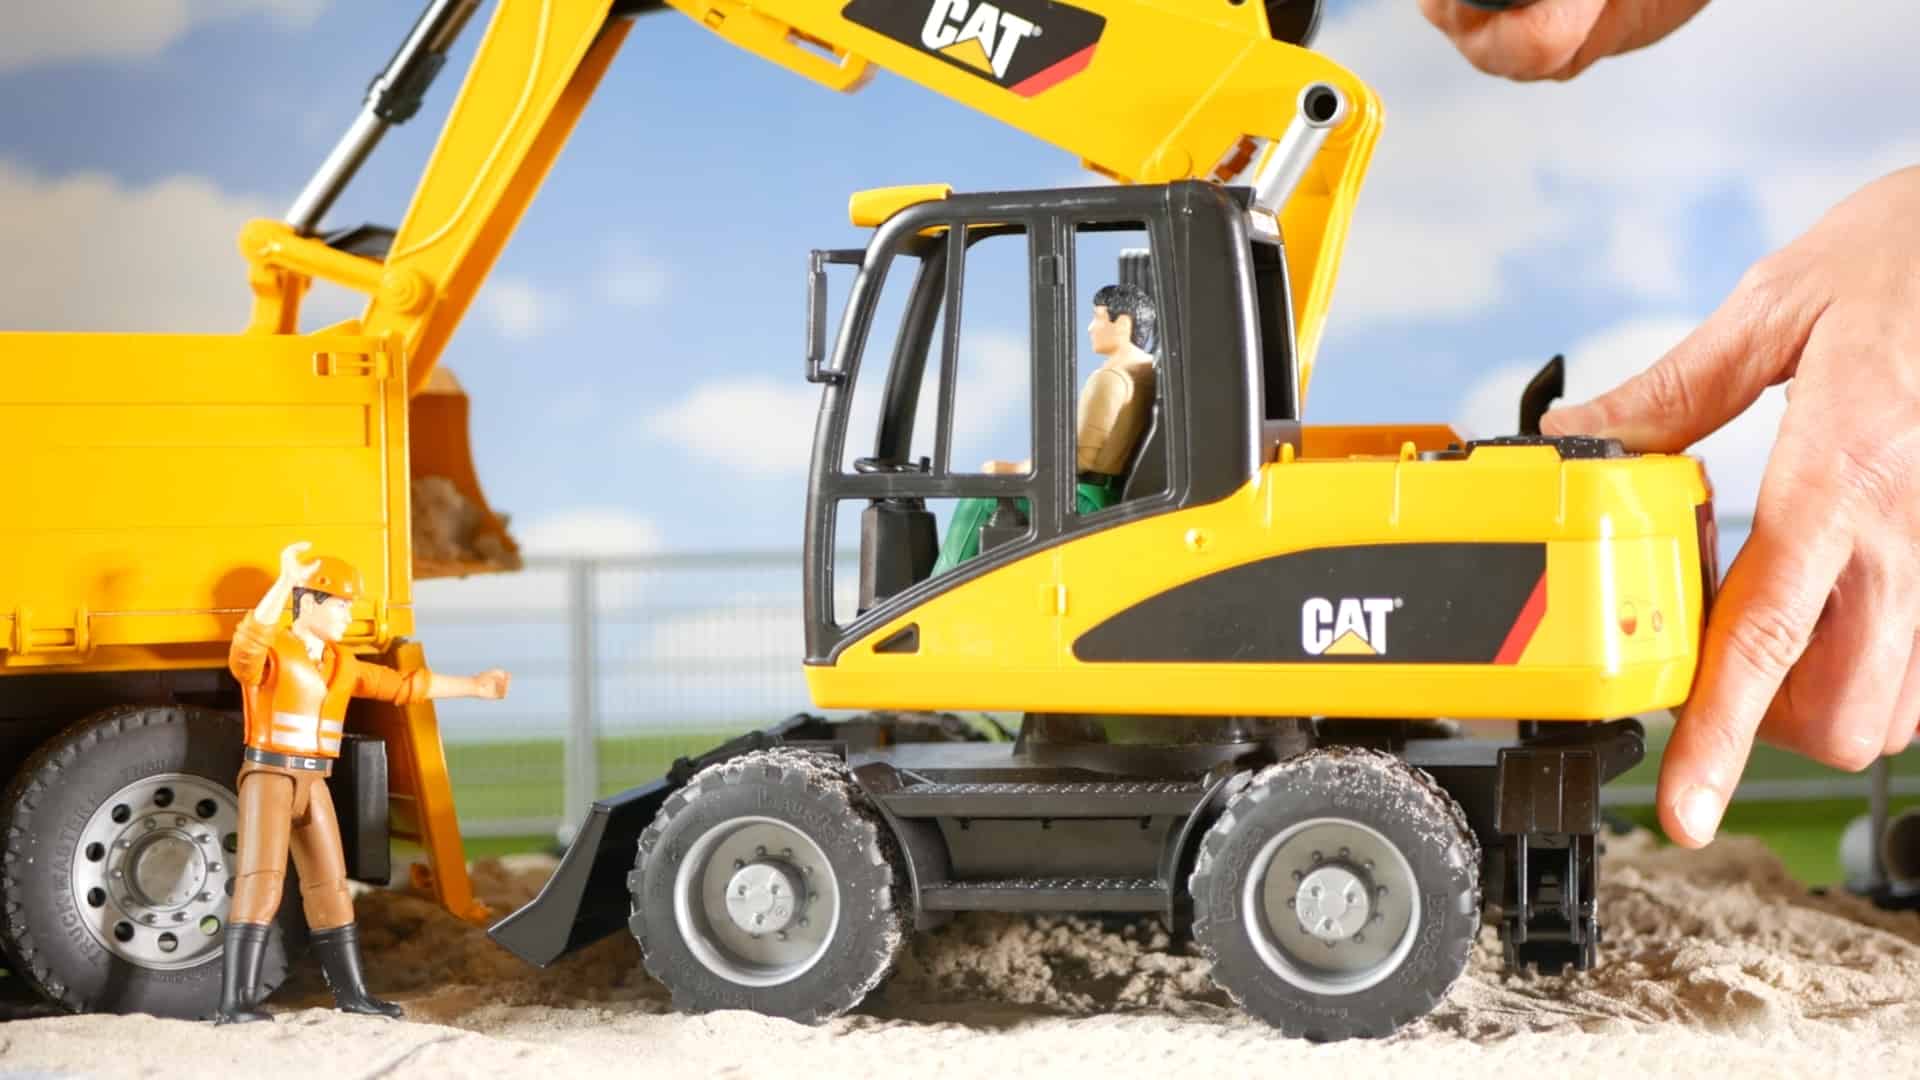 Bruder Cat 02445 / 02446 revisado: la mejor excavadora de juguete